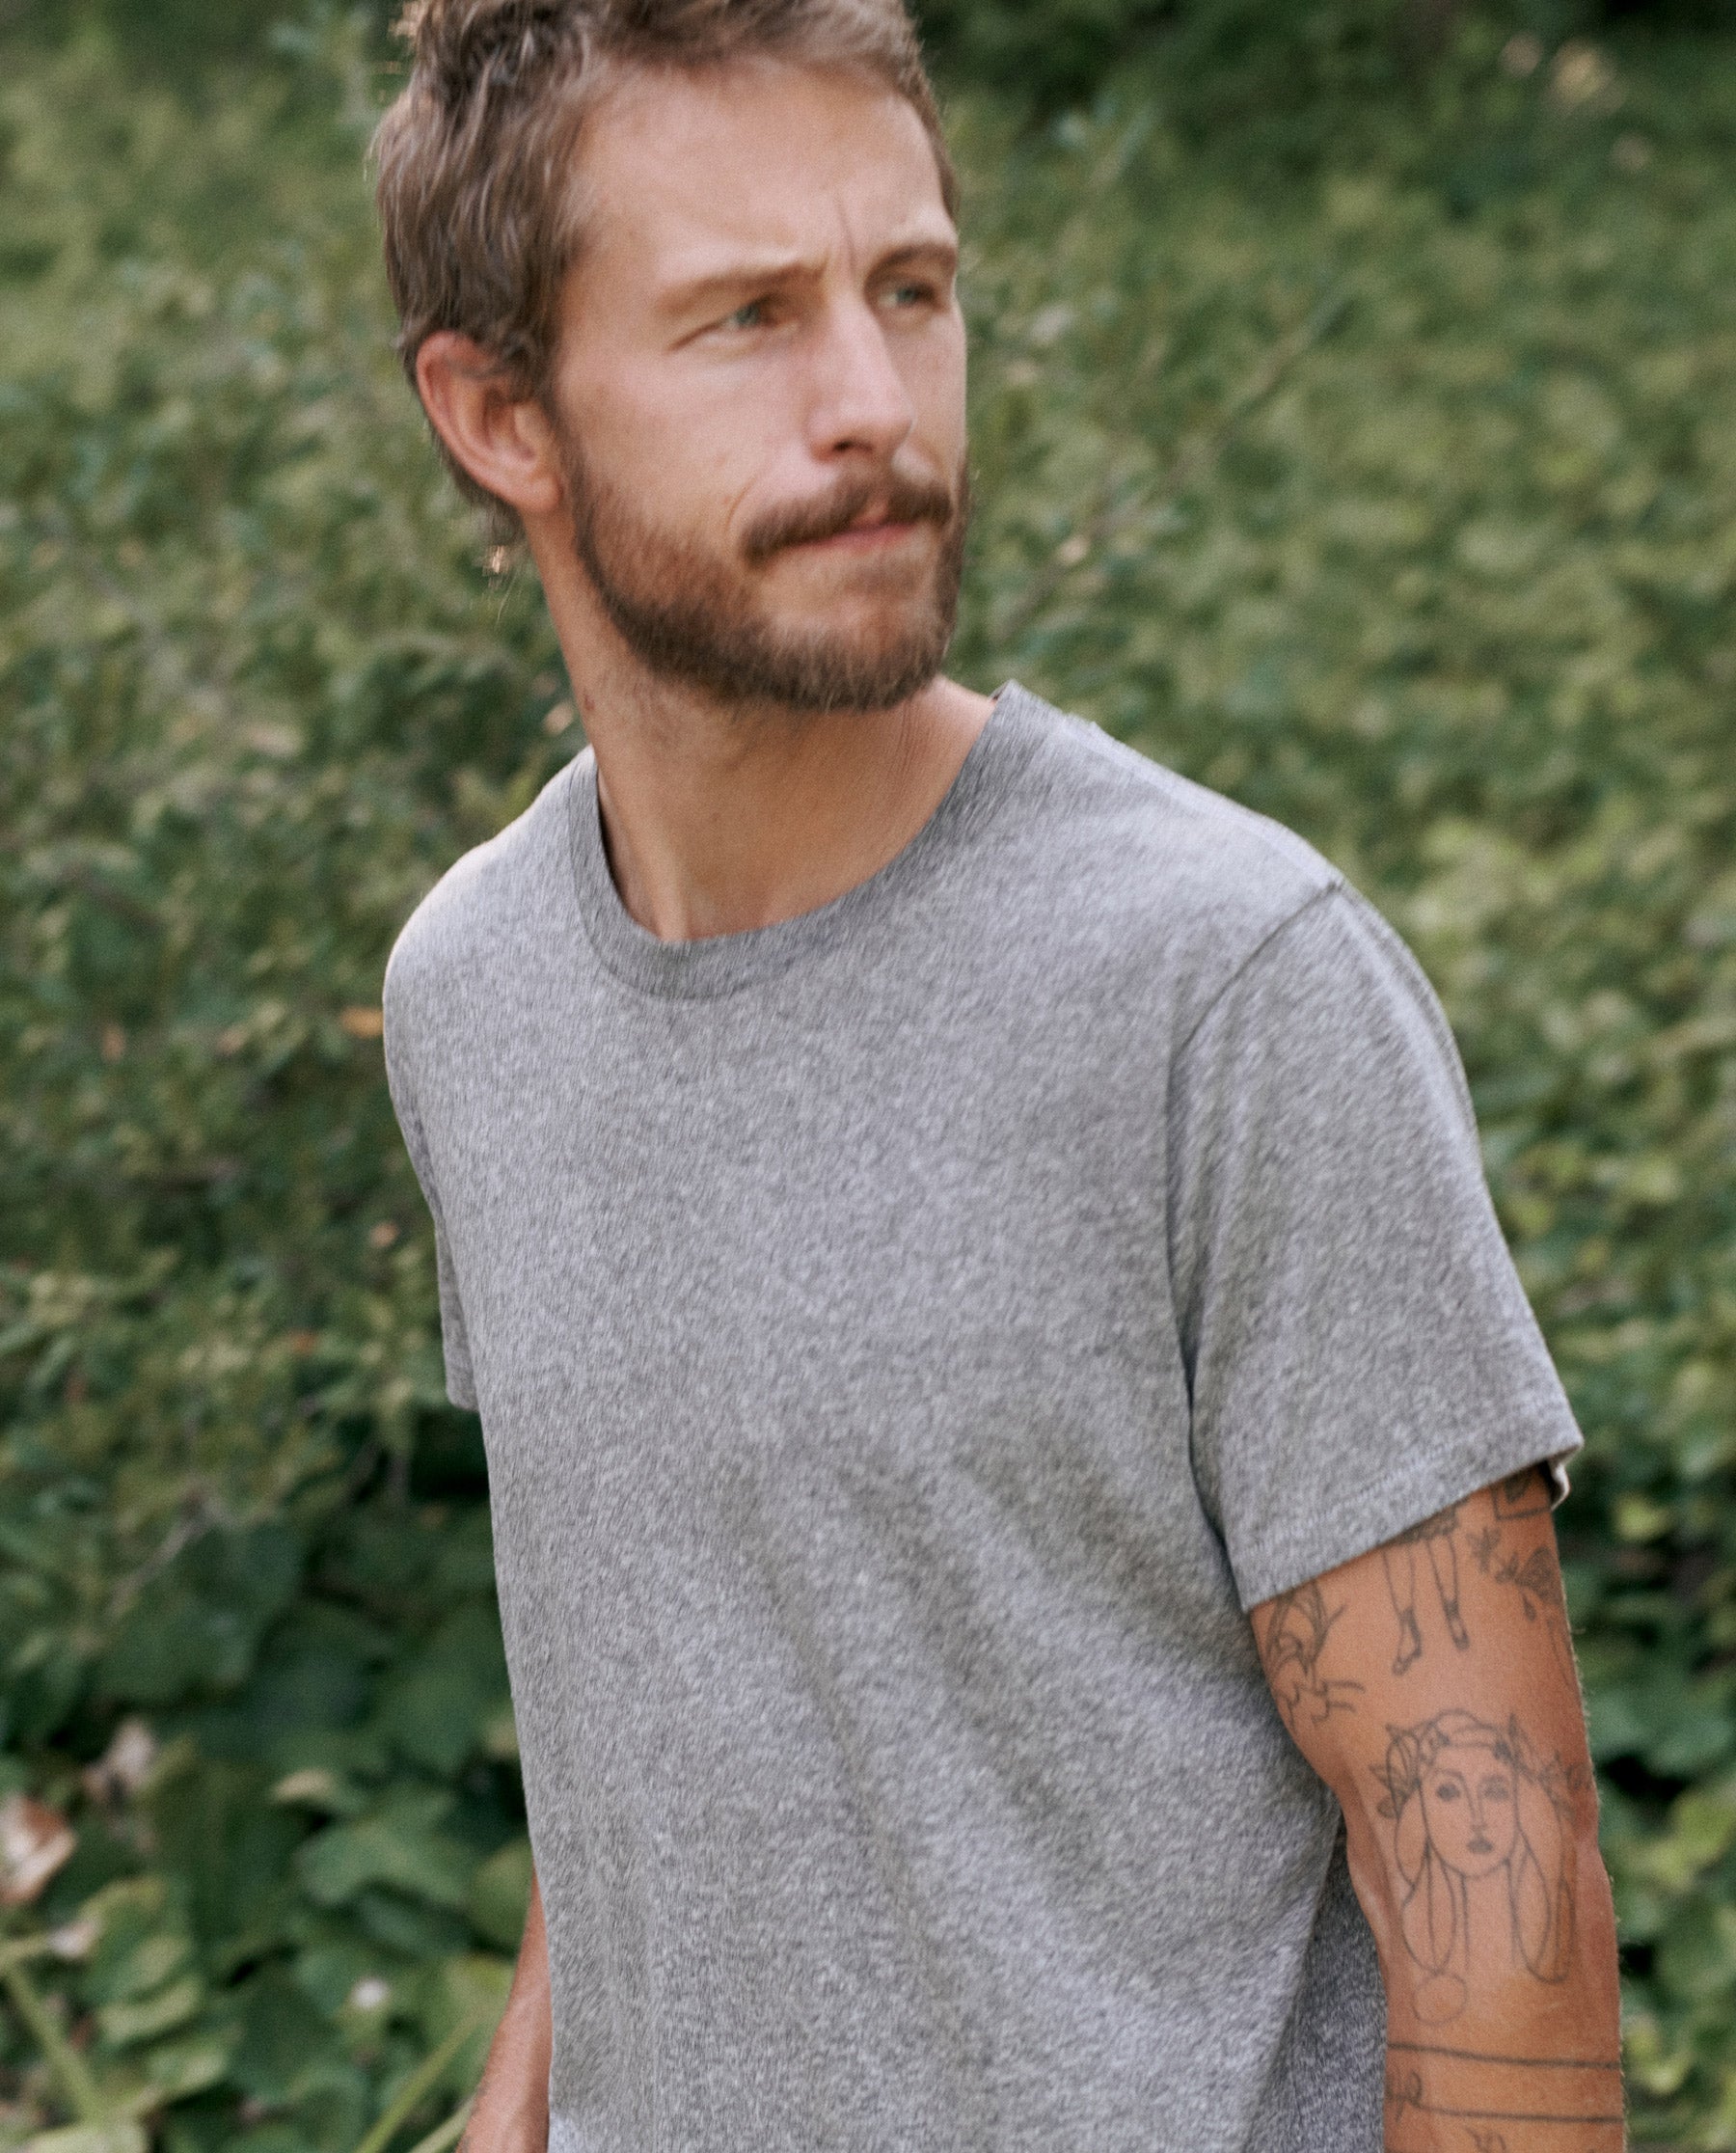 Men's Short Sleeve Performance T-Shirt - All In Motion™ Black S